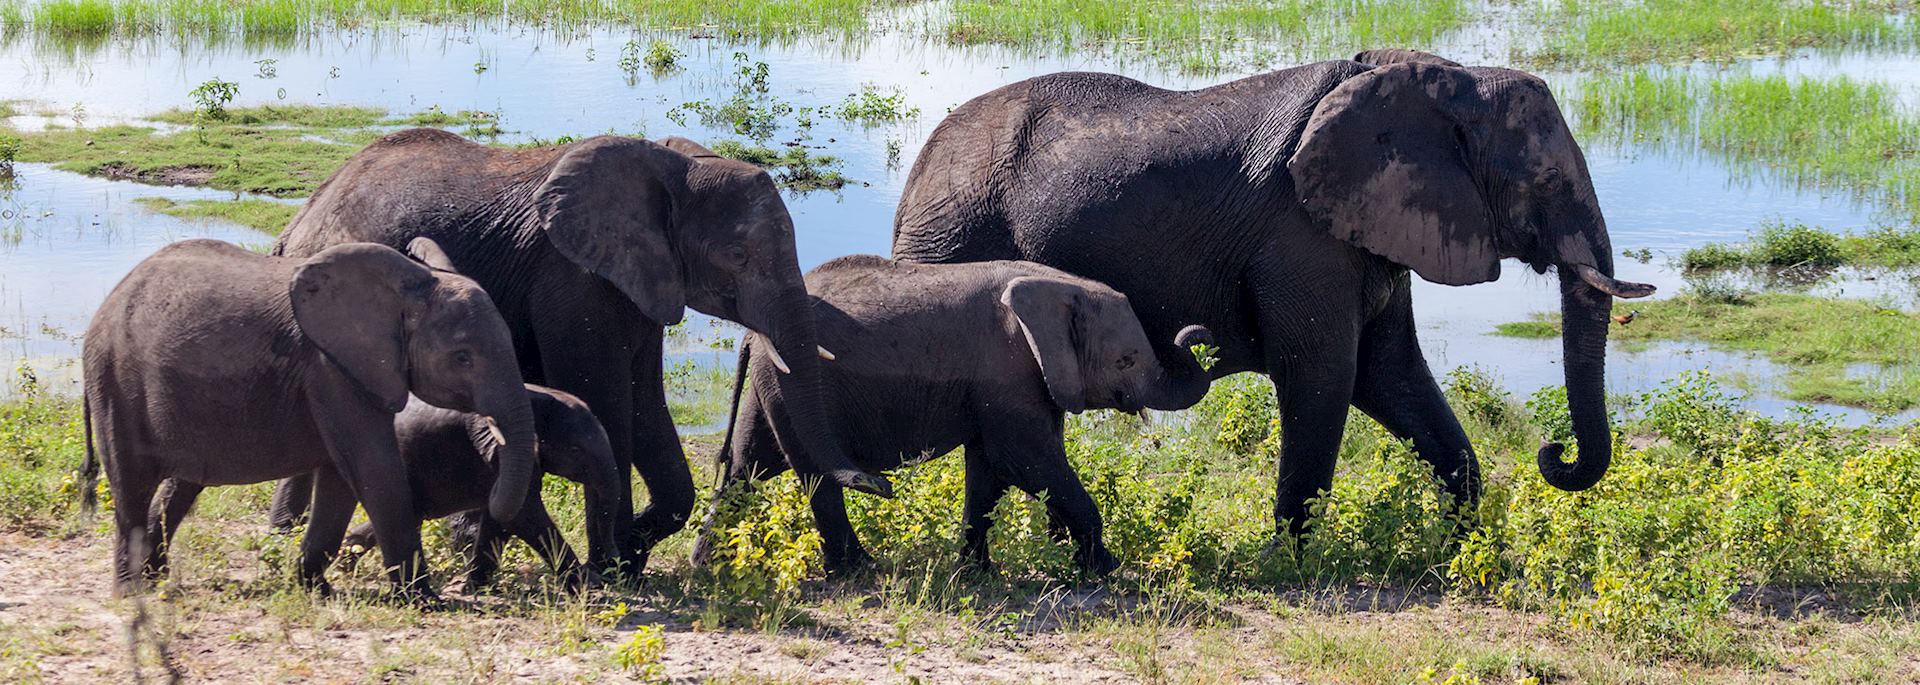 Elephant herd in Chobe National Park, Botswana